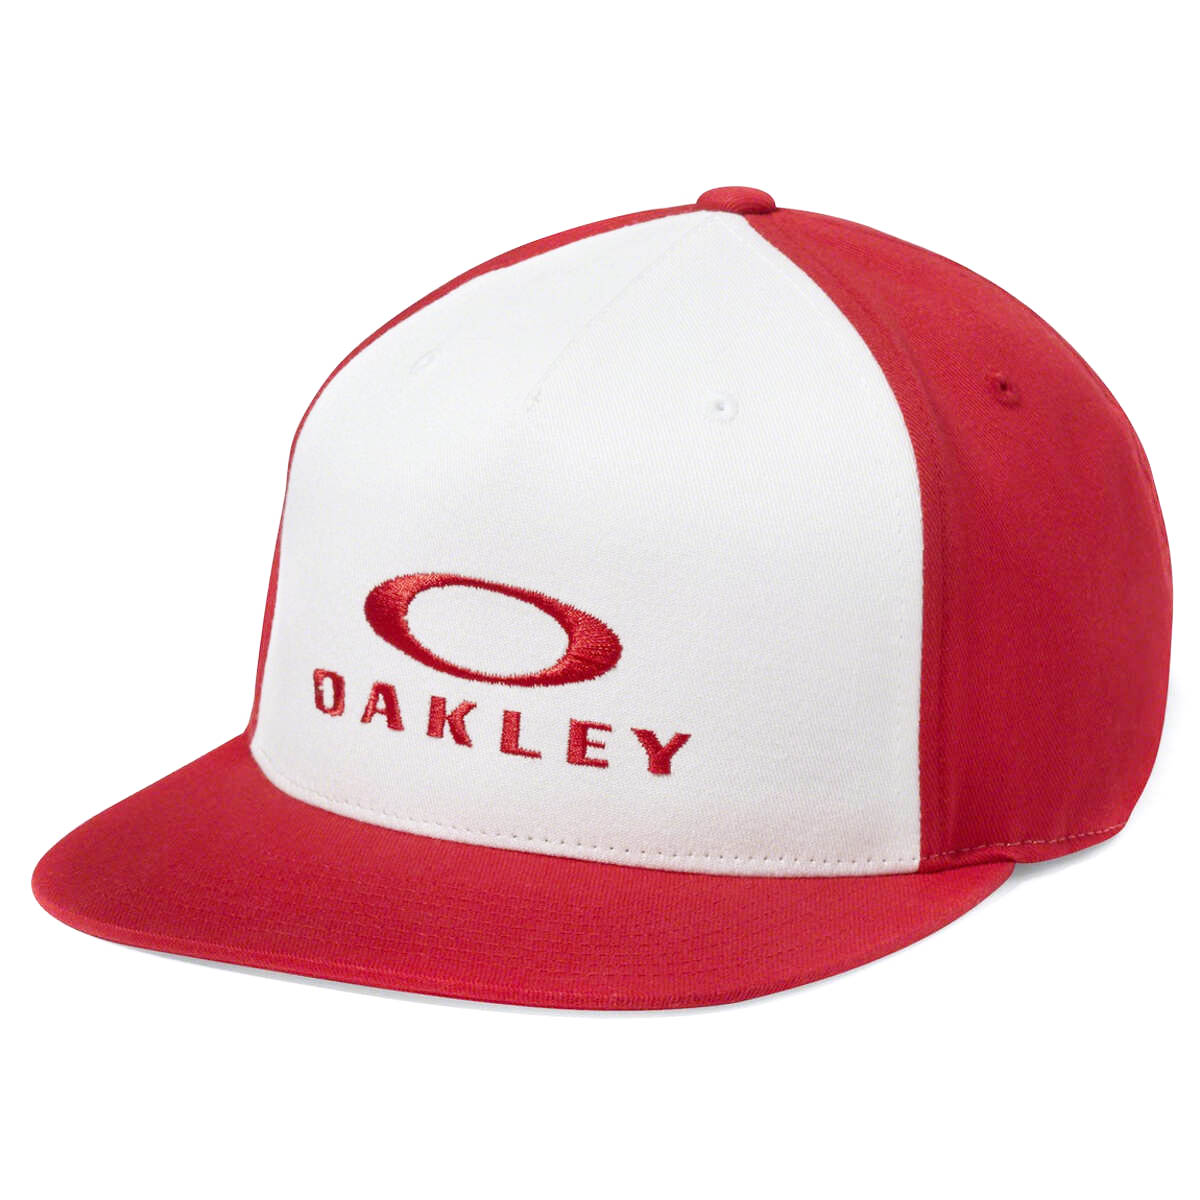 Oakley Cappellino Flexfit Sliver 110 Red Line